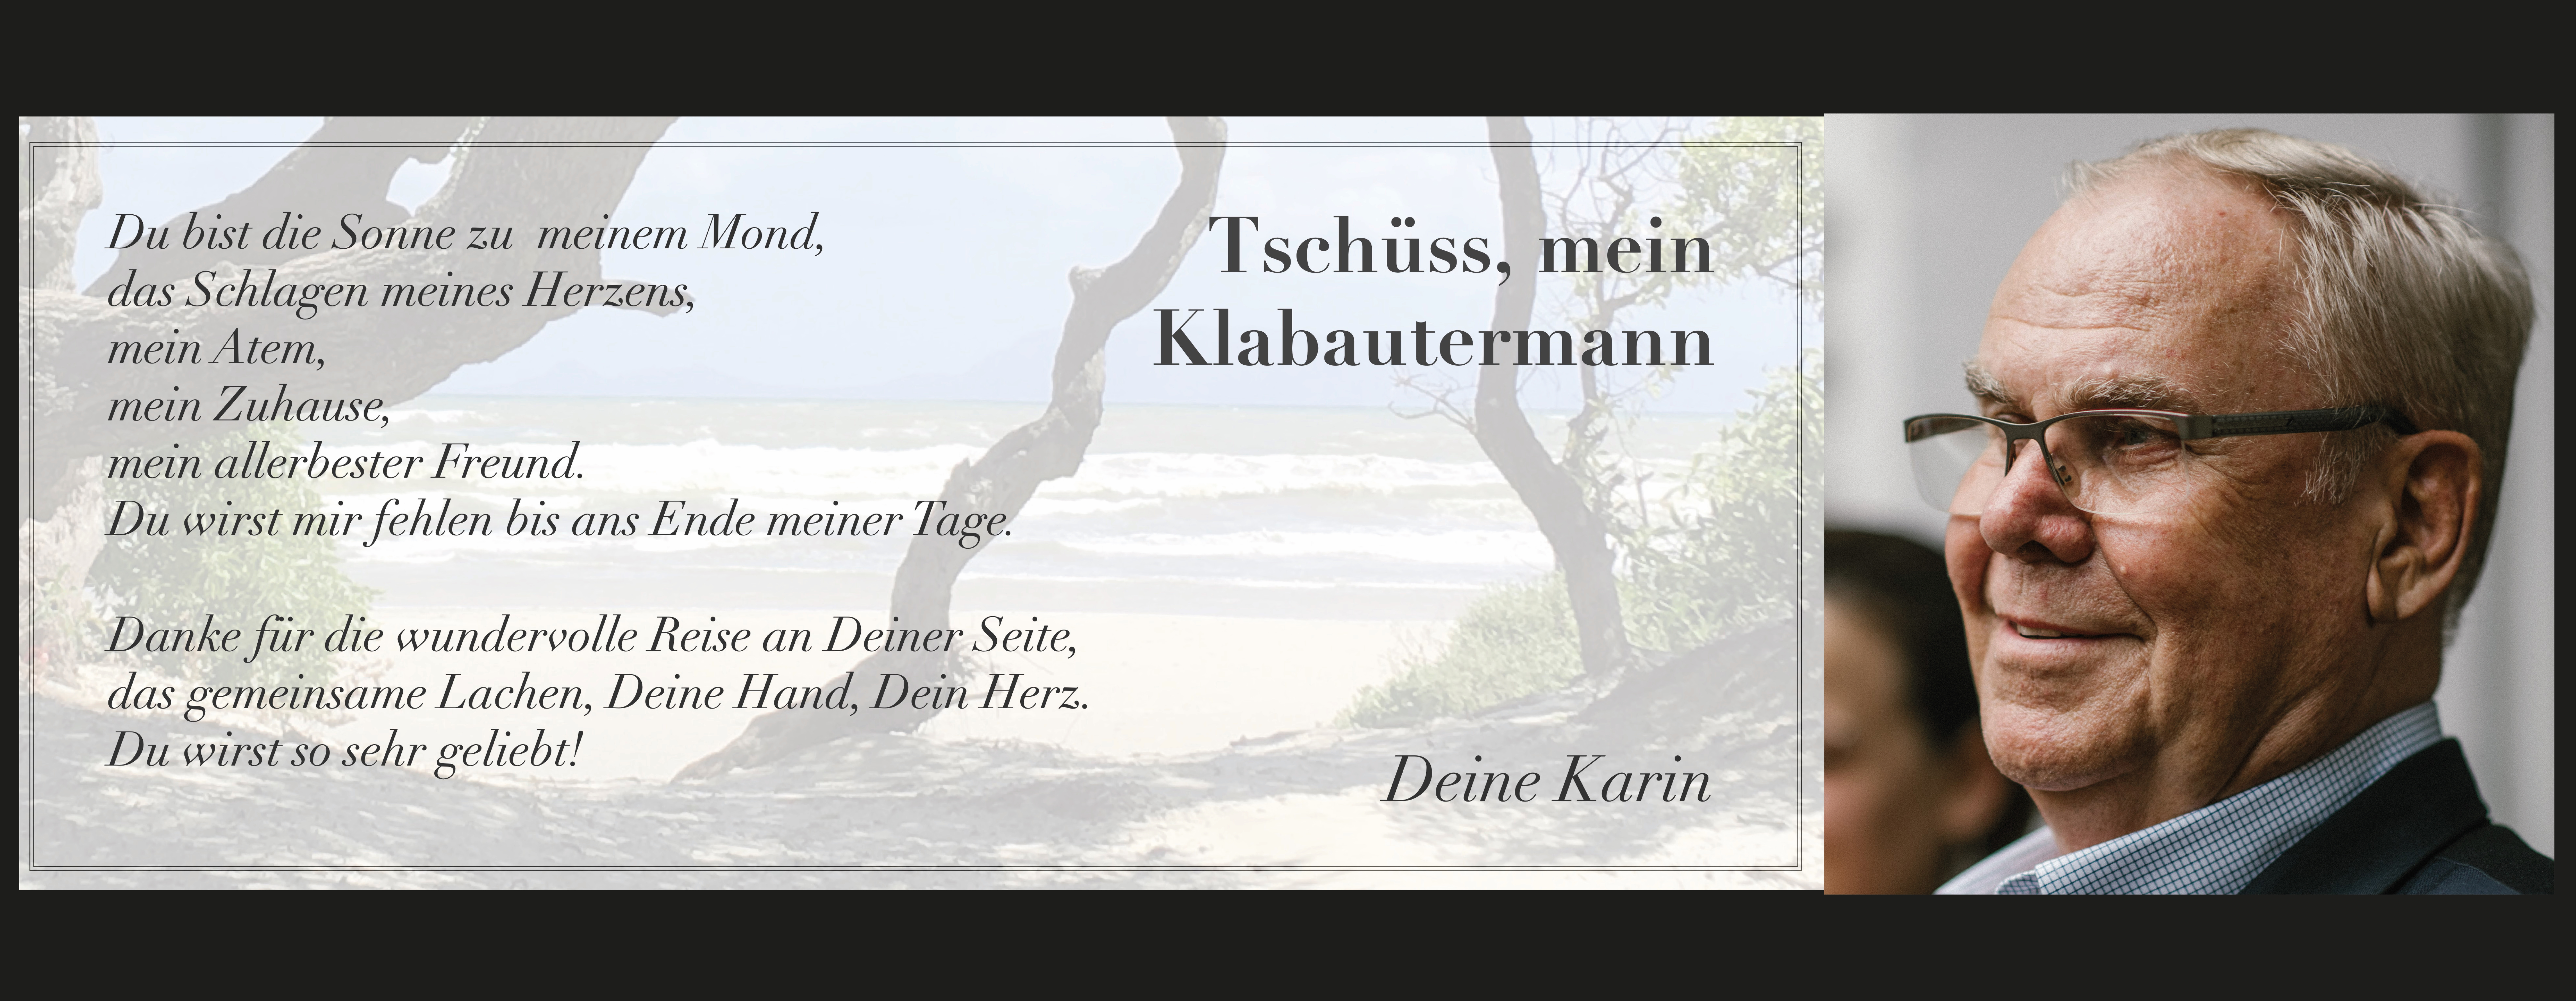 Website Tschüss Klabautermann